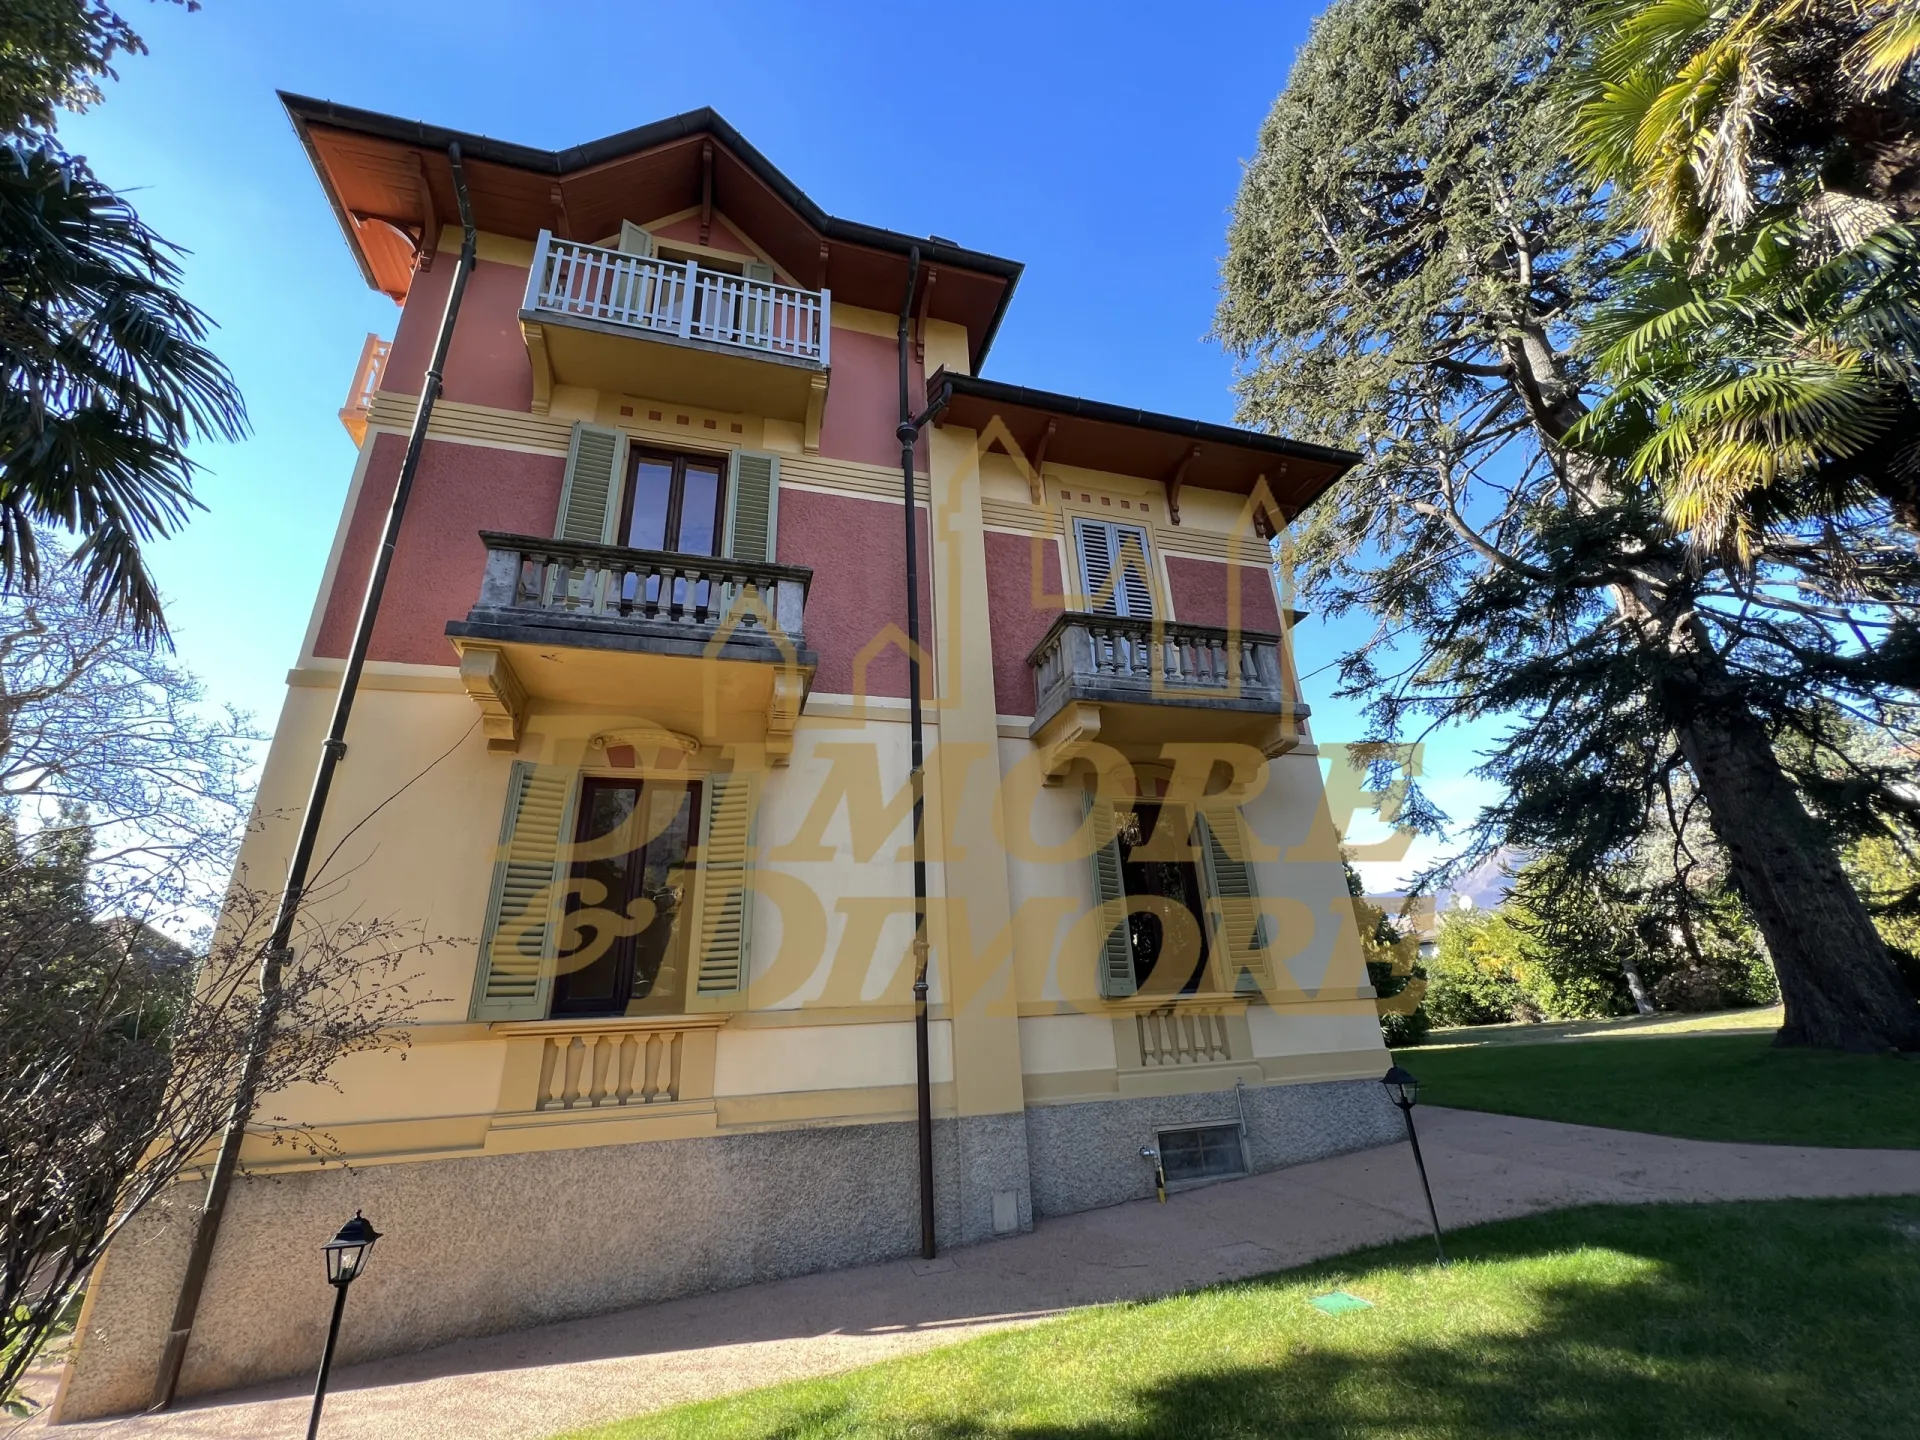 Immagine per Villa in affitto a Maccagno con Pino e Veddasca via Fratelli Maccario 3